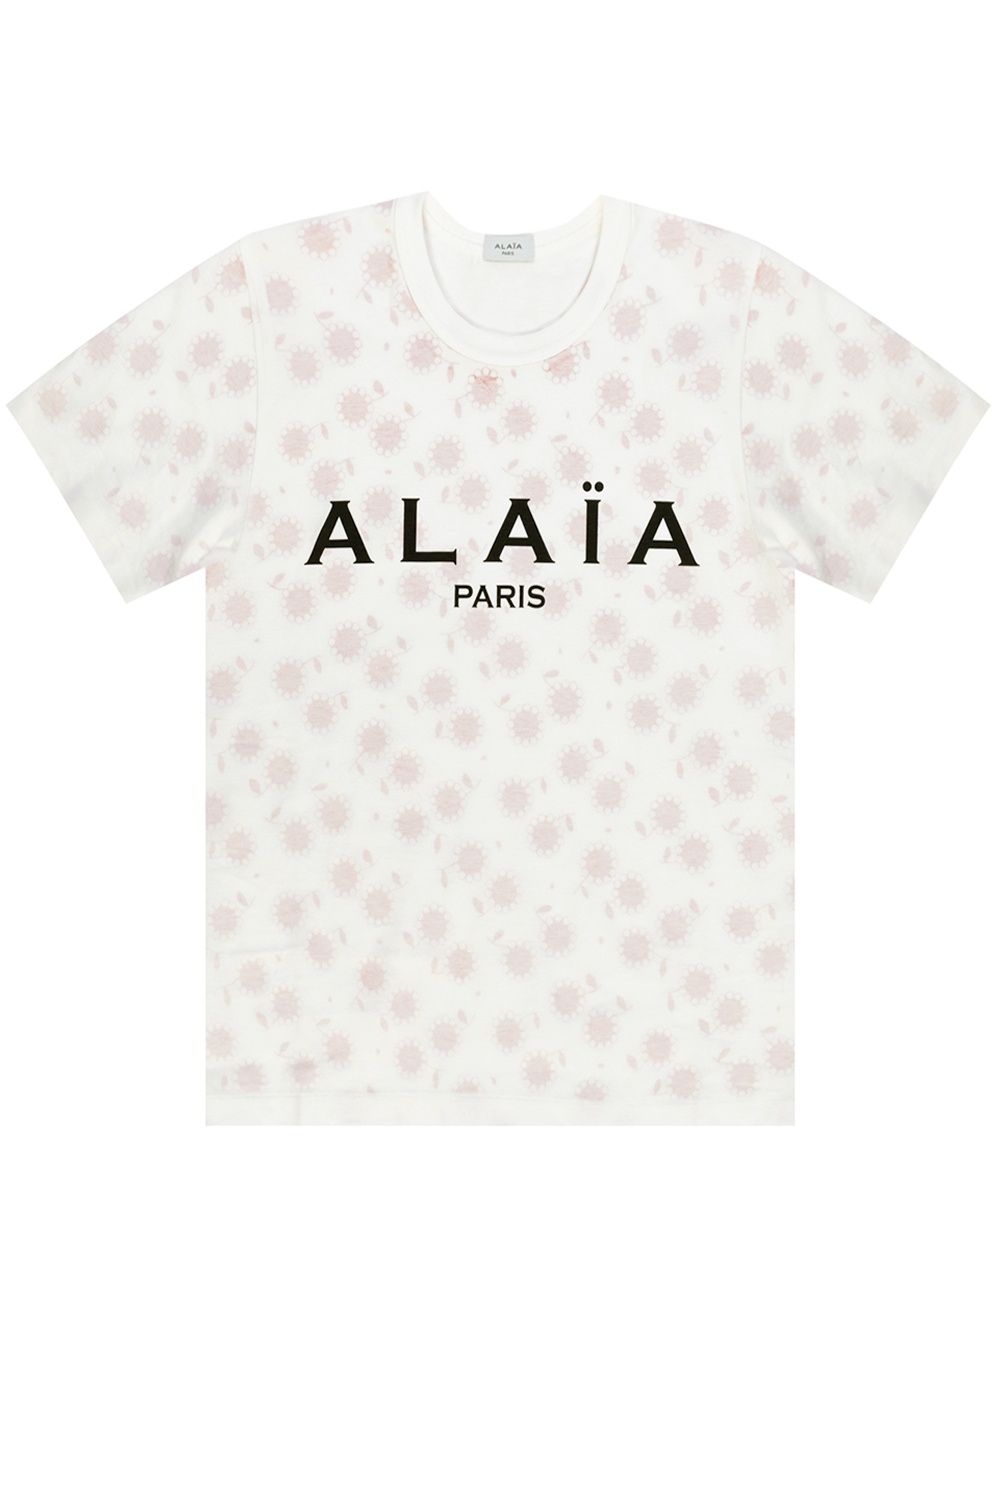 Alaia Giorgio Armani tonal embroidered logo polo shirt